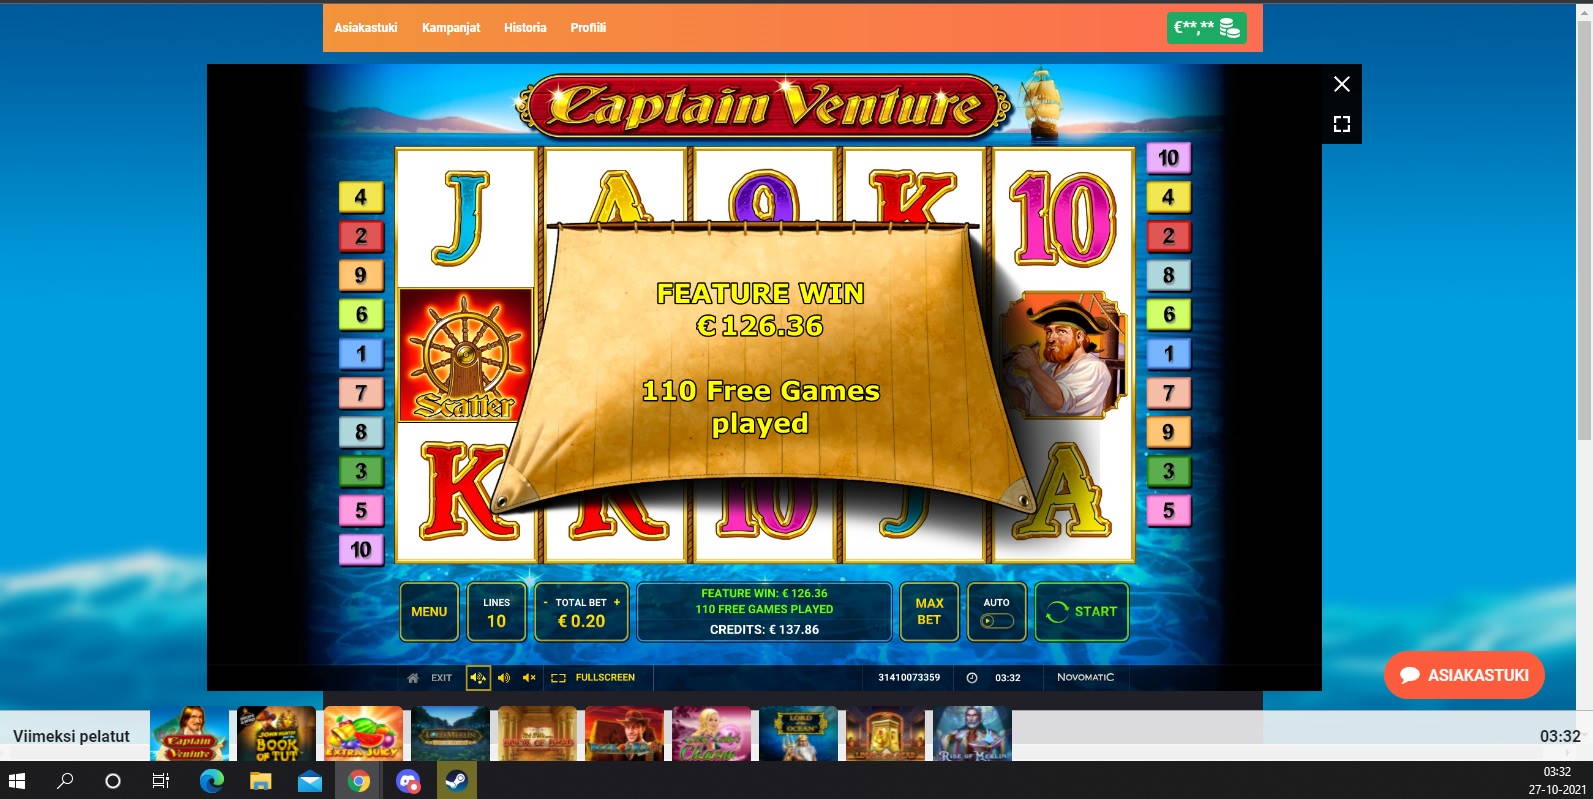 Captain Venture Casino win picture by Henkka 27.10.2021 126.36e 632X LeoVegas